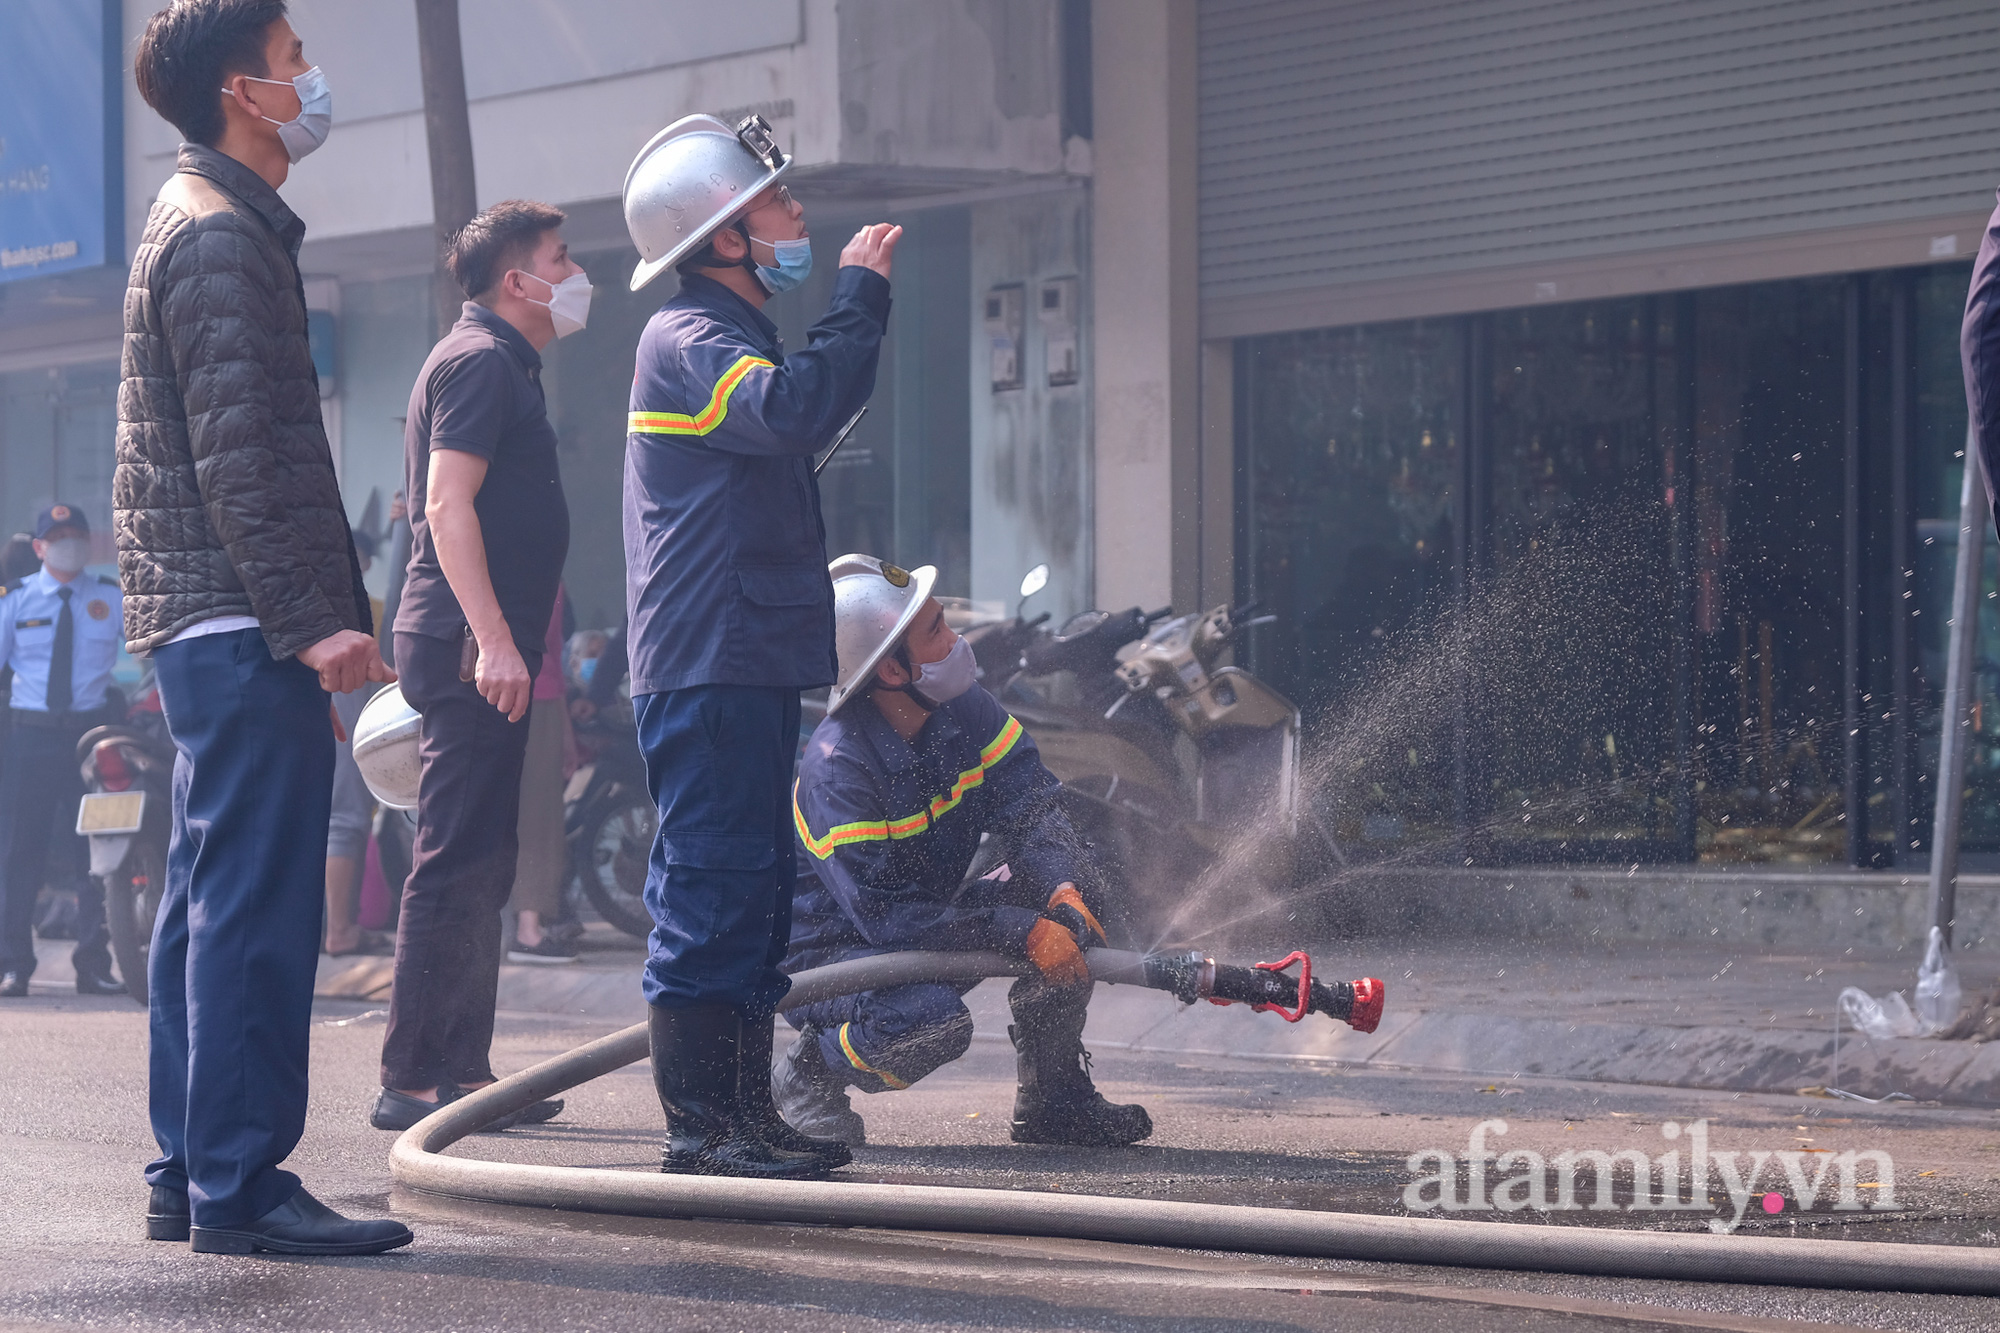 Hà Nội: Cháy nhà dân lan sang chi nhánh ngân hàng giữa trưa, hàng chục nhân viên hoảng loạn bỏ chạy thoát thân - Ảnh 3.